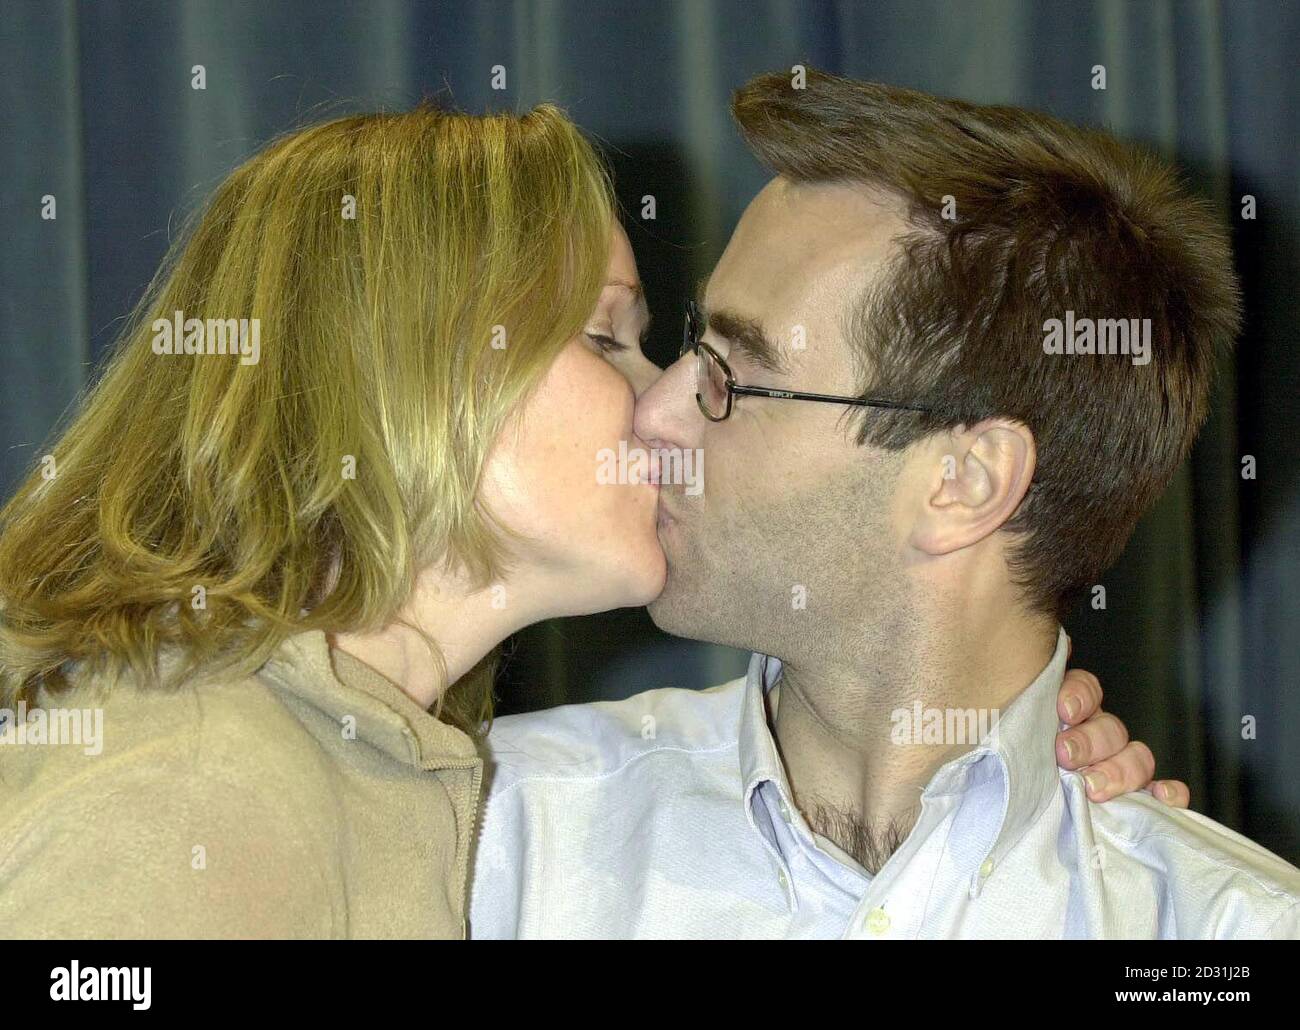 Tim Selby, der 28-jährige britische Ingenieur, bekommt einen Kuss von seiner Freundin Brigid Thorns, 25, am Flughafen Heathrow. Das Paar wurde wieder vereint, nachdem Tim in Bangladesch als Geisel genommen wurde, und flog nach Hause, nachdem er diese Woche noch freier wurde. Stockfoto